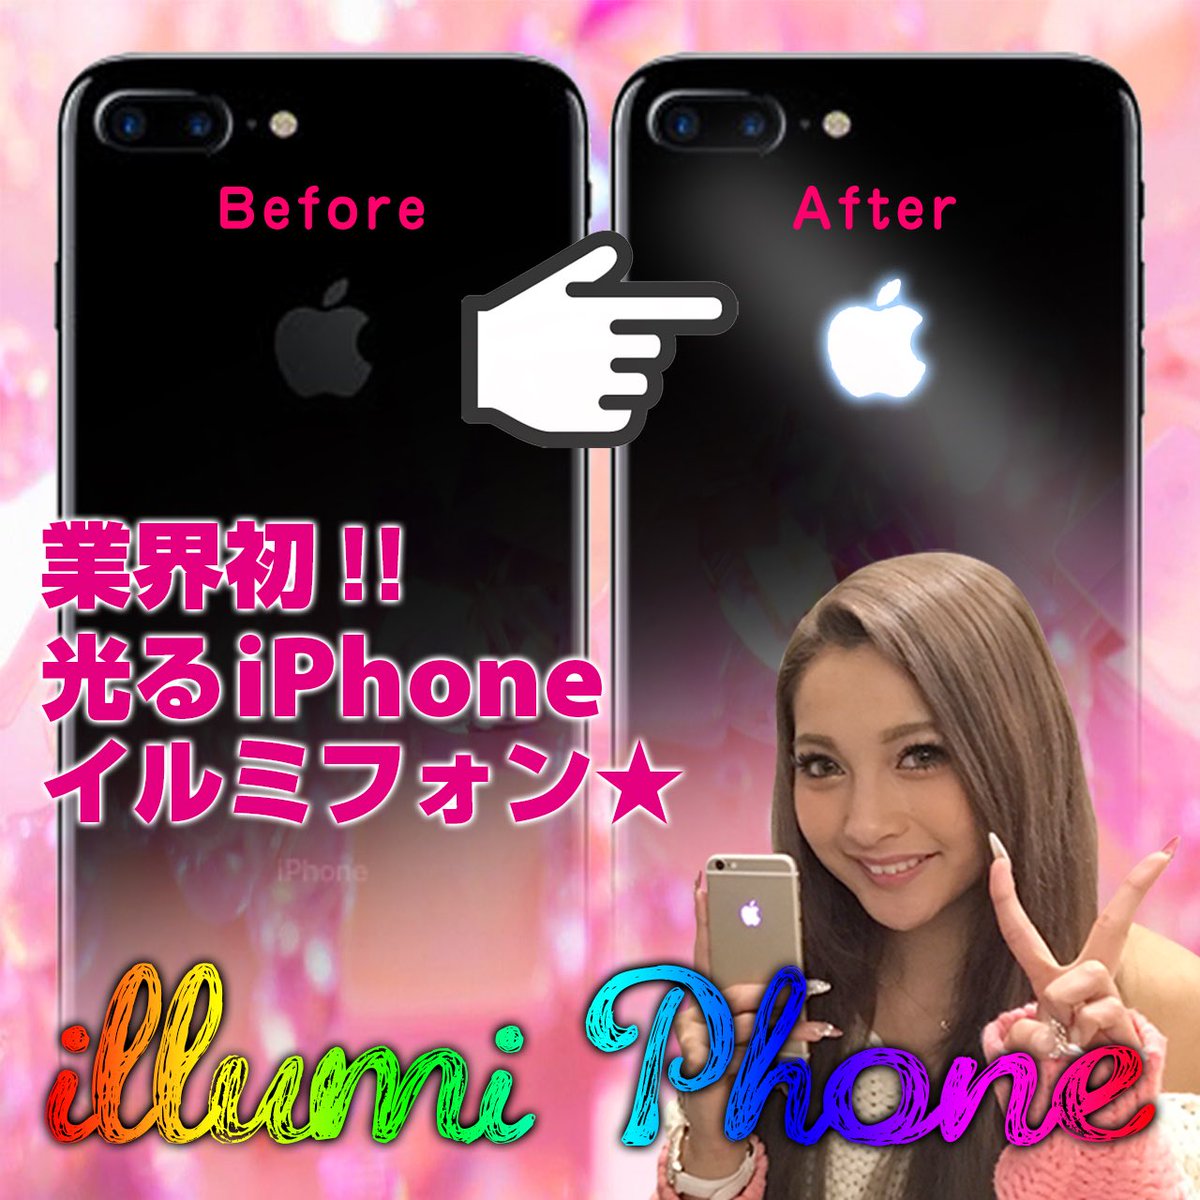 ゆきぽよ Yuki Kimura On Twitter ゆきのiphone最近海外でも流行ってるリンゴが7色に光るやつにしてもらった Iphoneの後ろのリンゴマークが7色に光ってギャル 日本初上陸の イルミフォン って言うらしい 日本では Iふぉん太郎さんってお店でできるよ